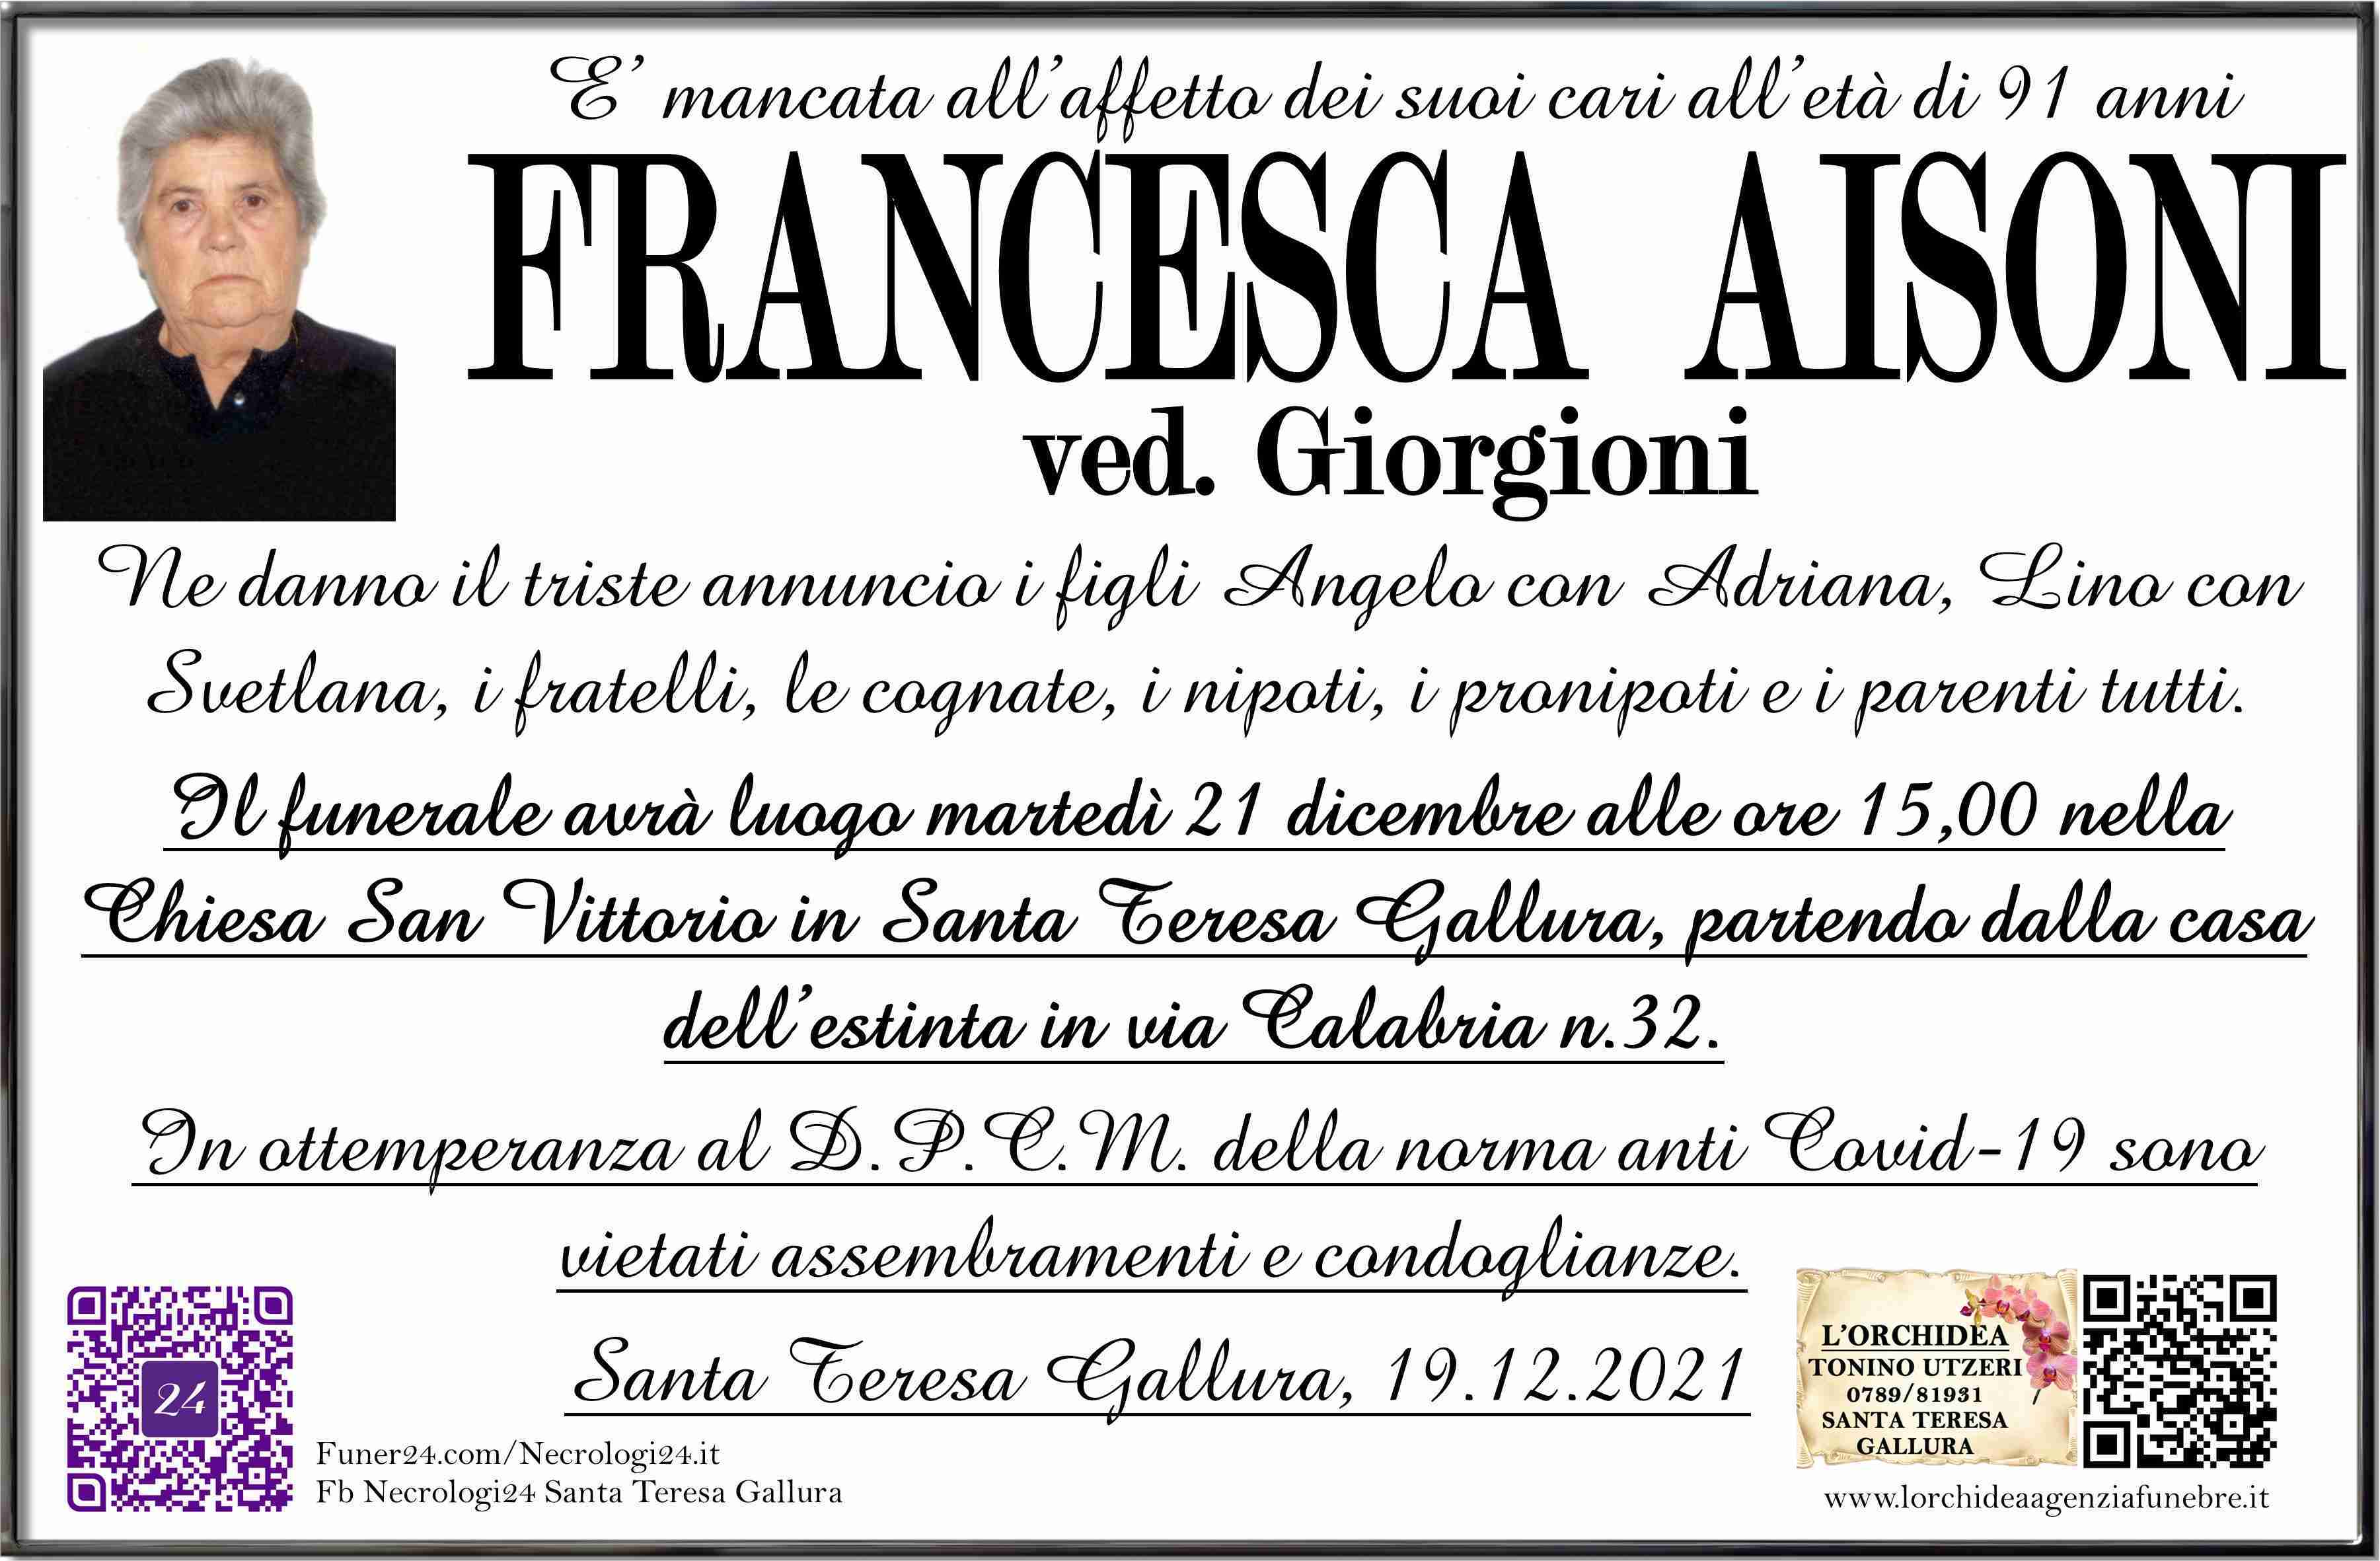 Francesca Aisoni